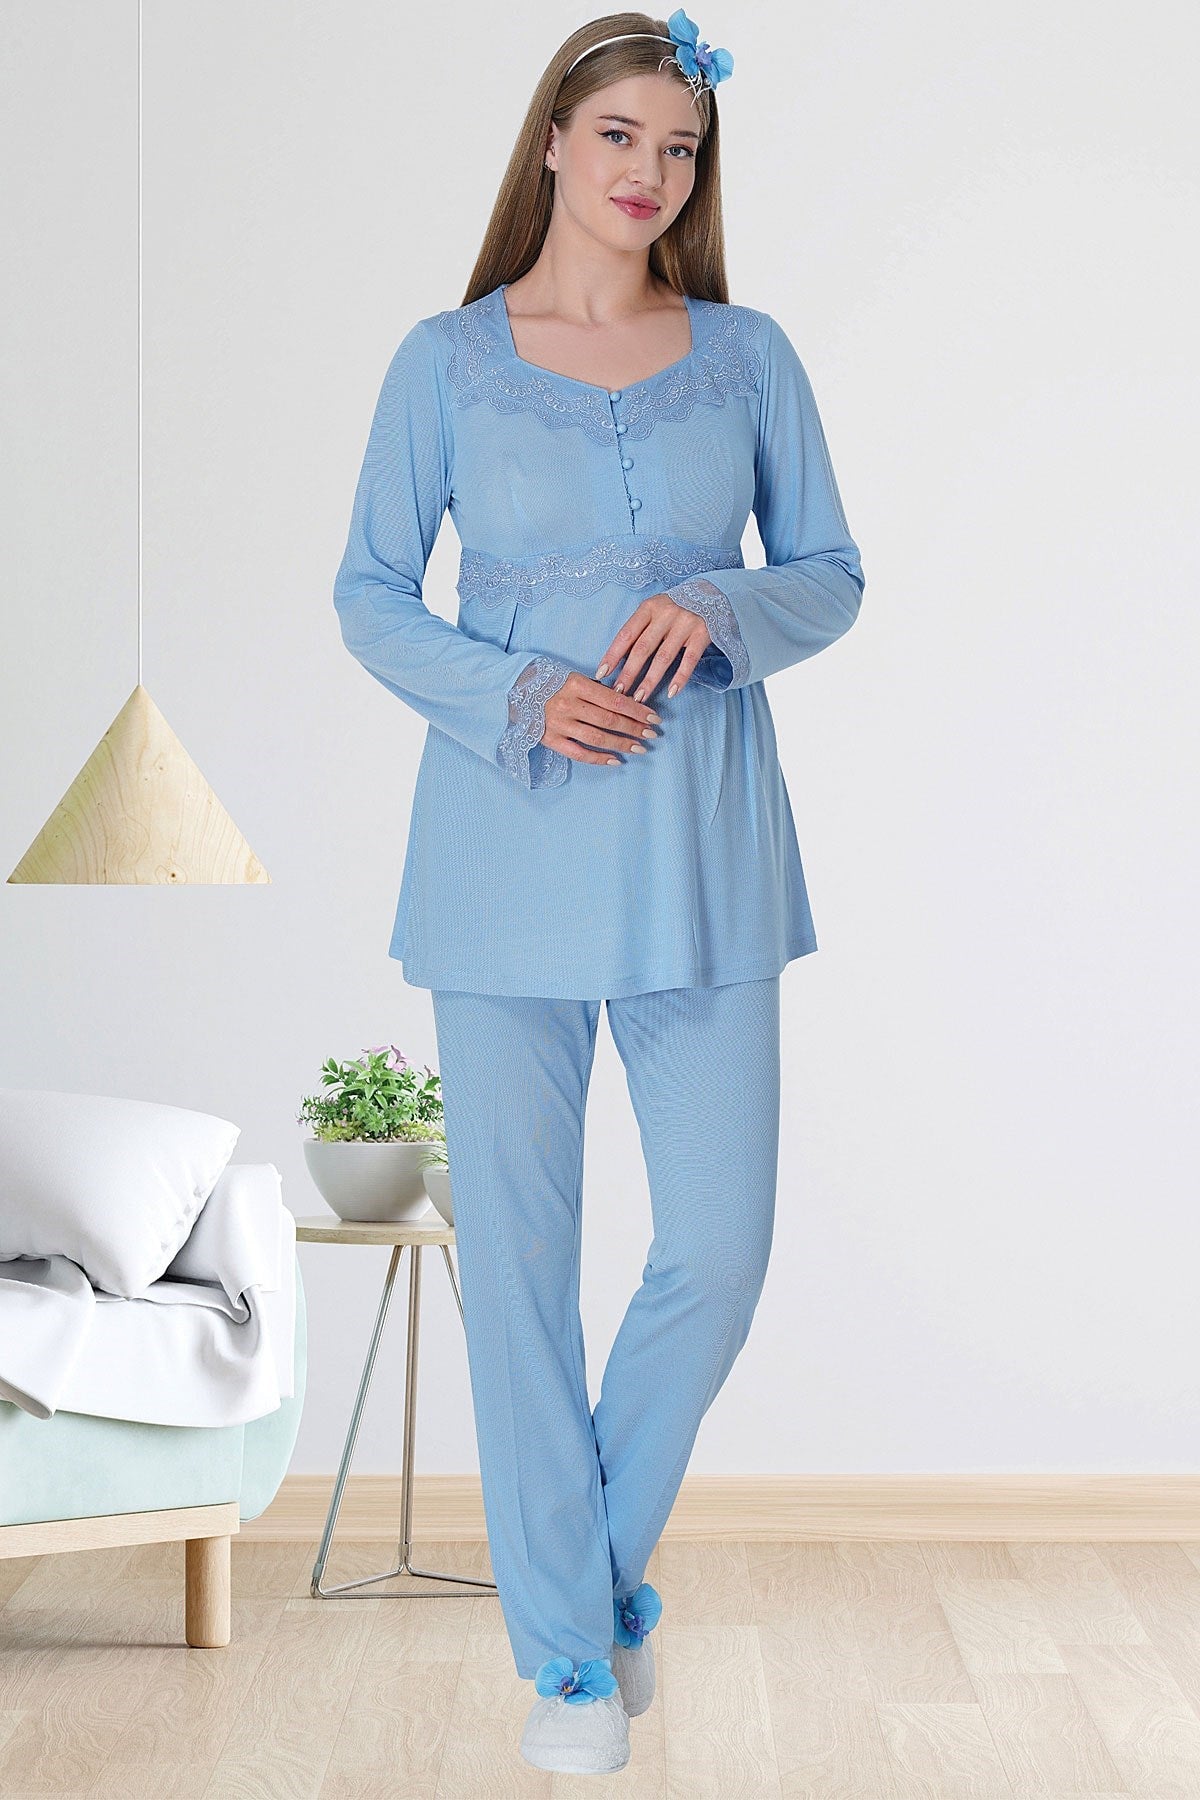 Shopymommy 5711 Lace Detailed Maternity & Nursing Pajamas Blue